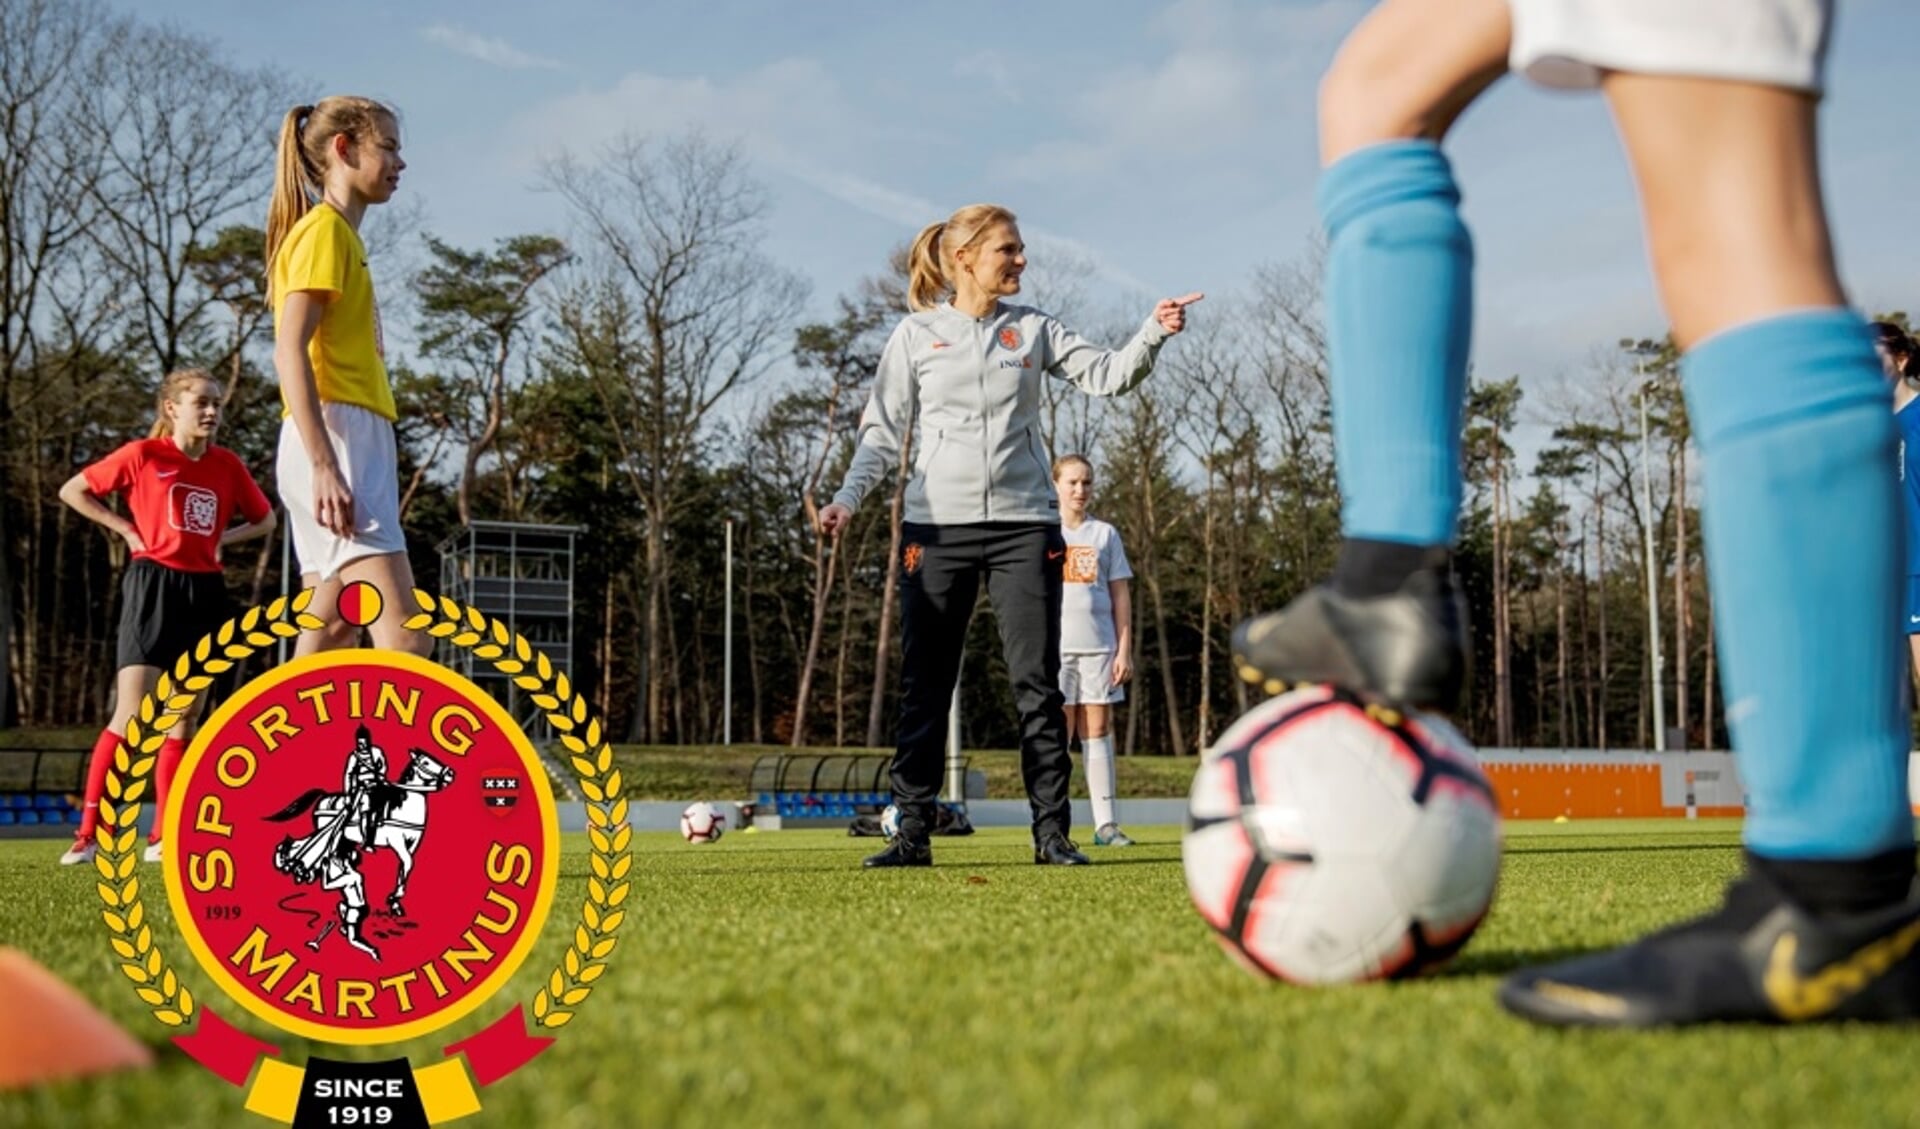 Sporting Martinus gat voor groei dames- en meidenvoetbal in Amstelveen